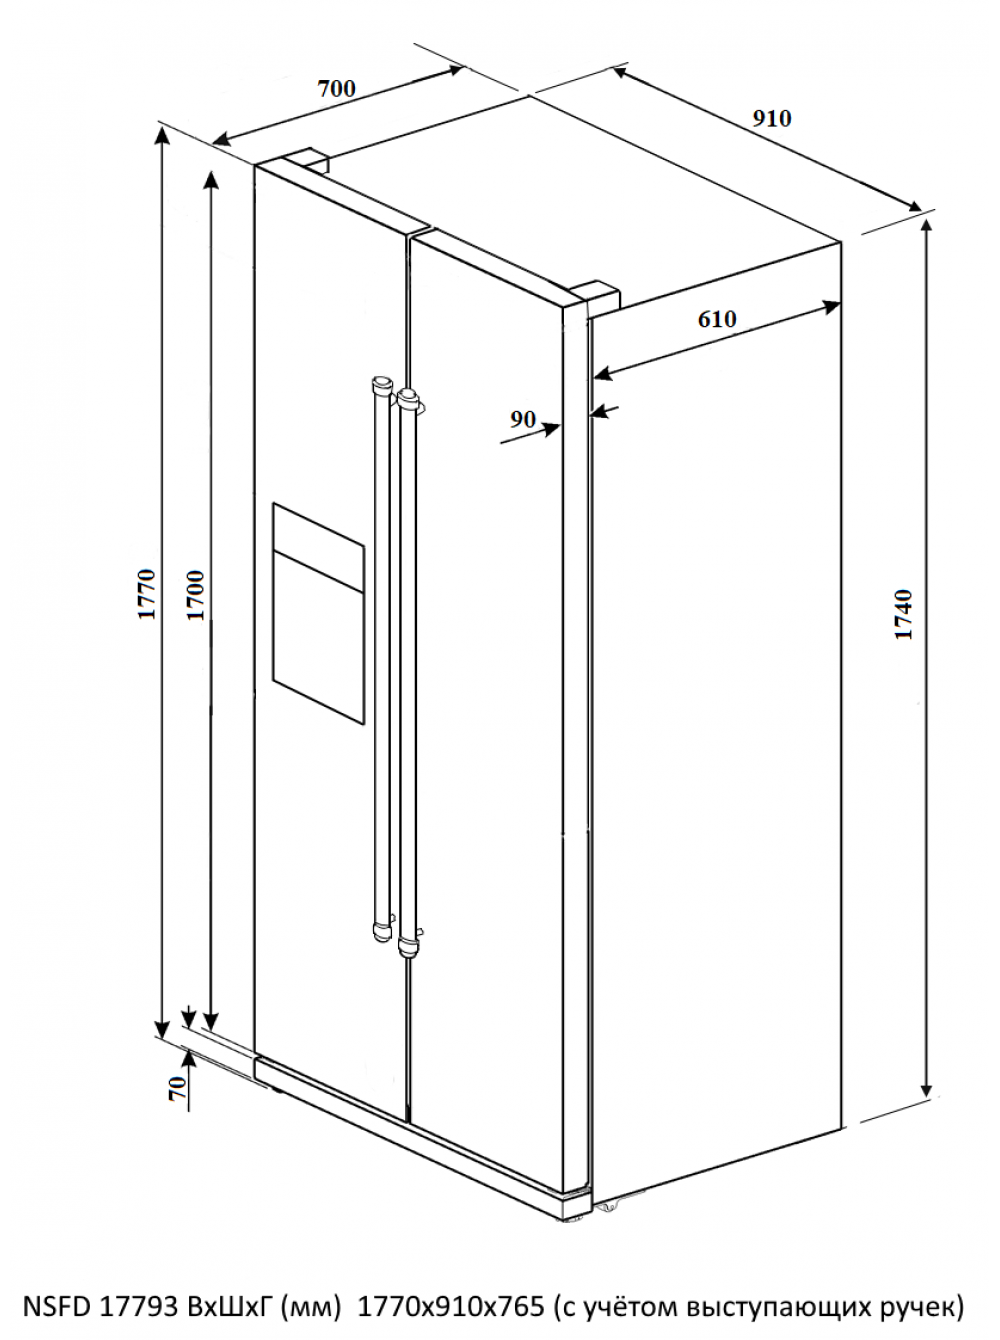 Размеры холодильника, то есть его ширина, высота и глубина, имеют важное значение Также следует учитывать такой параметр данной бытовой техники, как объем